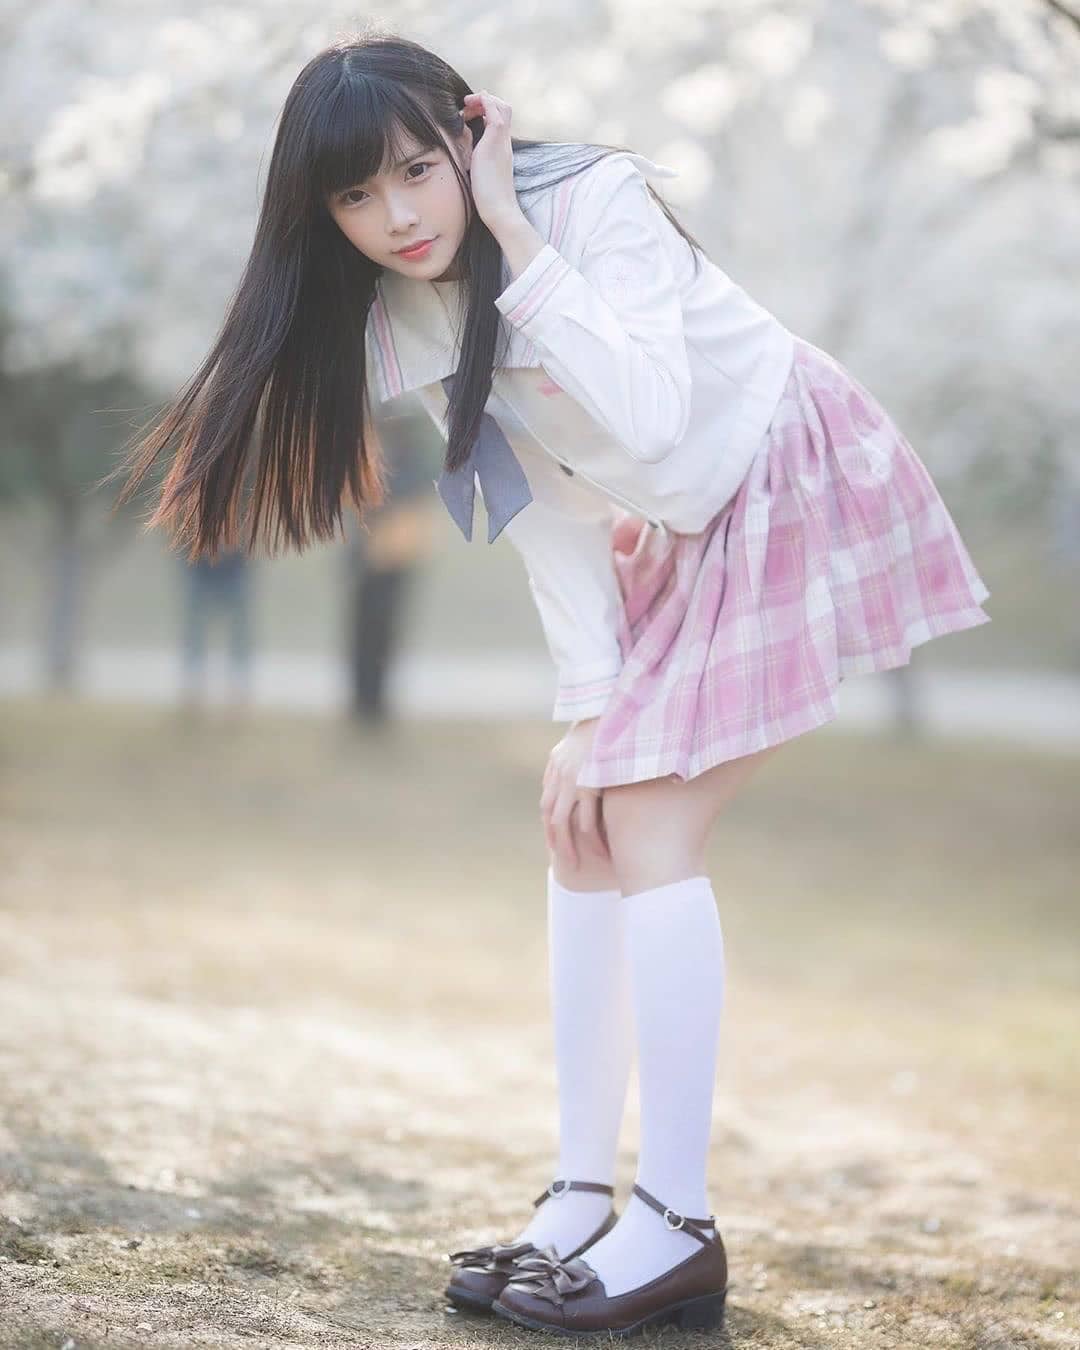 地区:日本东京 主题:jk制服 话题:想在樱花树下邂逅一位这样的女孩儿